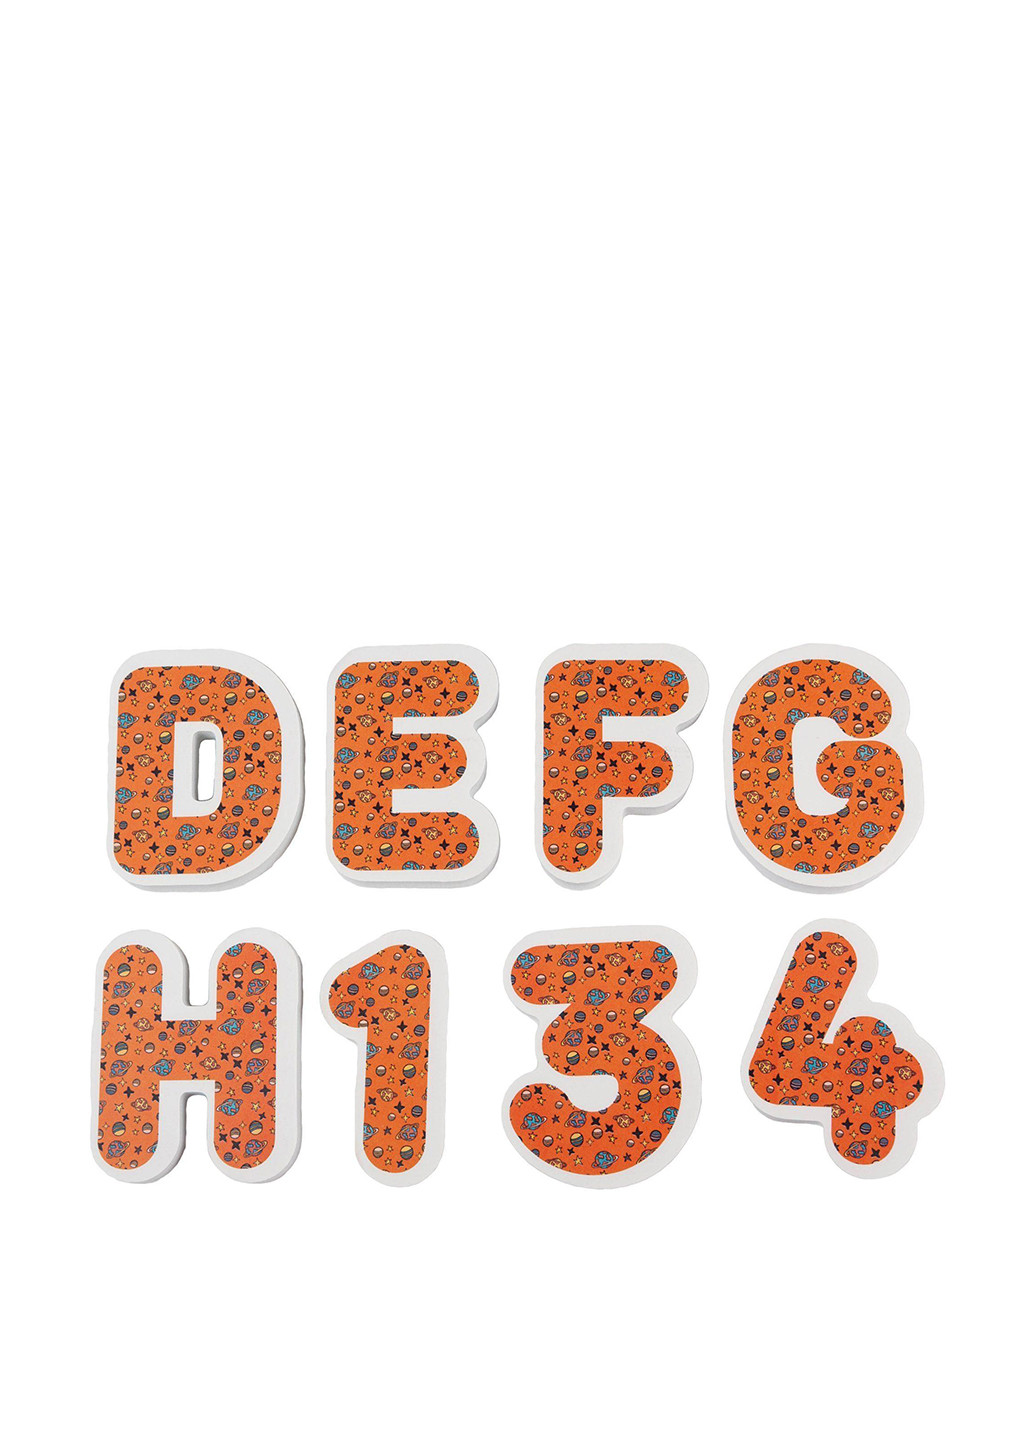 Игрушка для купания (Englisg+цифры), (37 ед., мешочек для сушки, мешок хранения) XoKo (135370981)